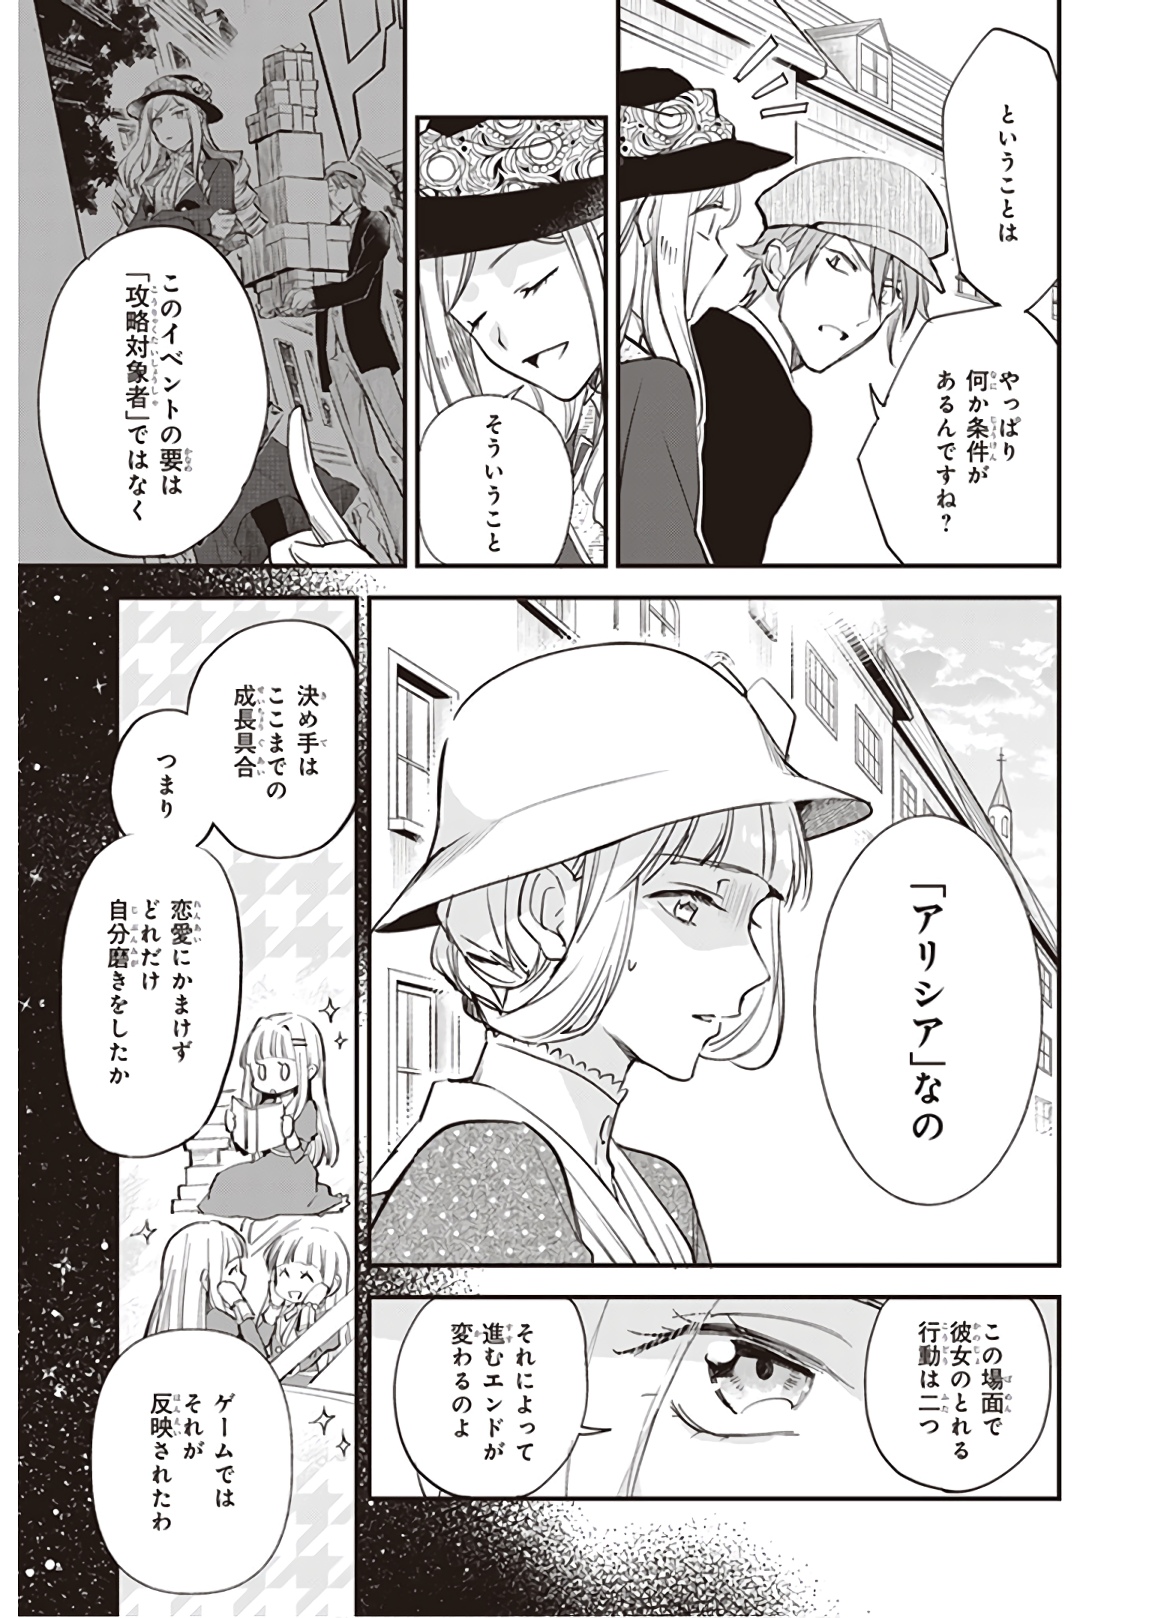 Albert-ke no Reijou wa Botsuraku wo Goshomou desu - Chapter 10.3 - Page 3